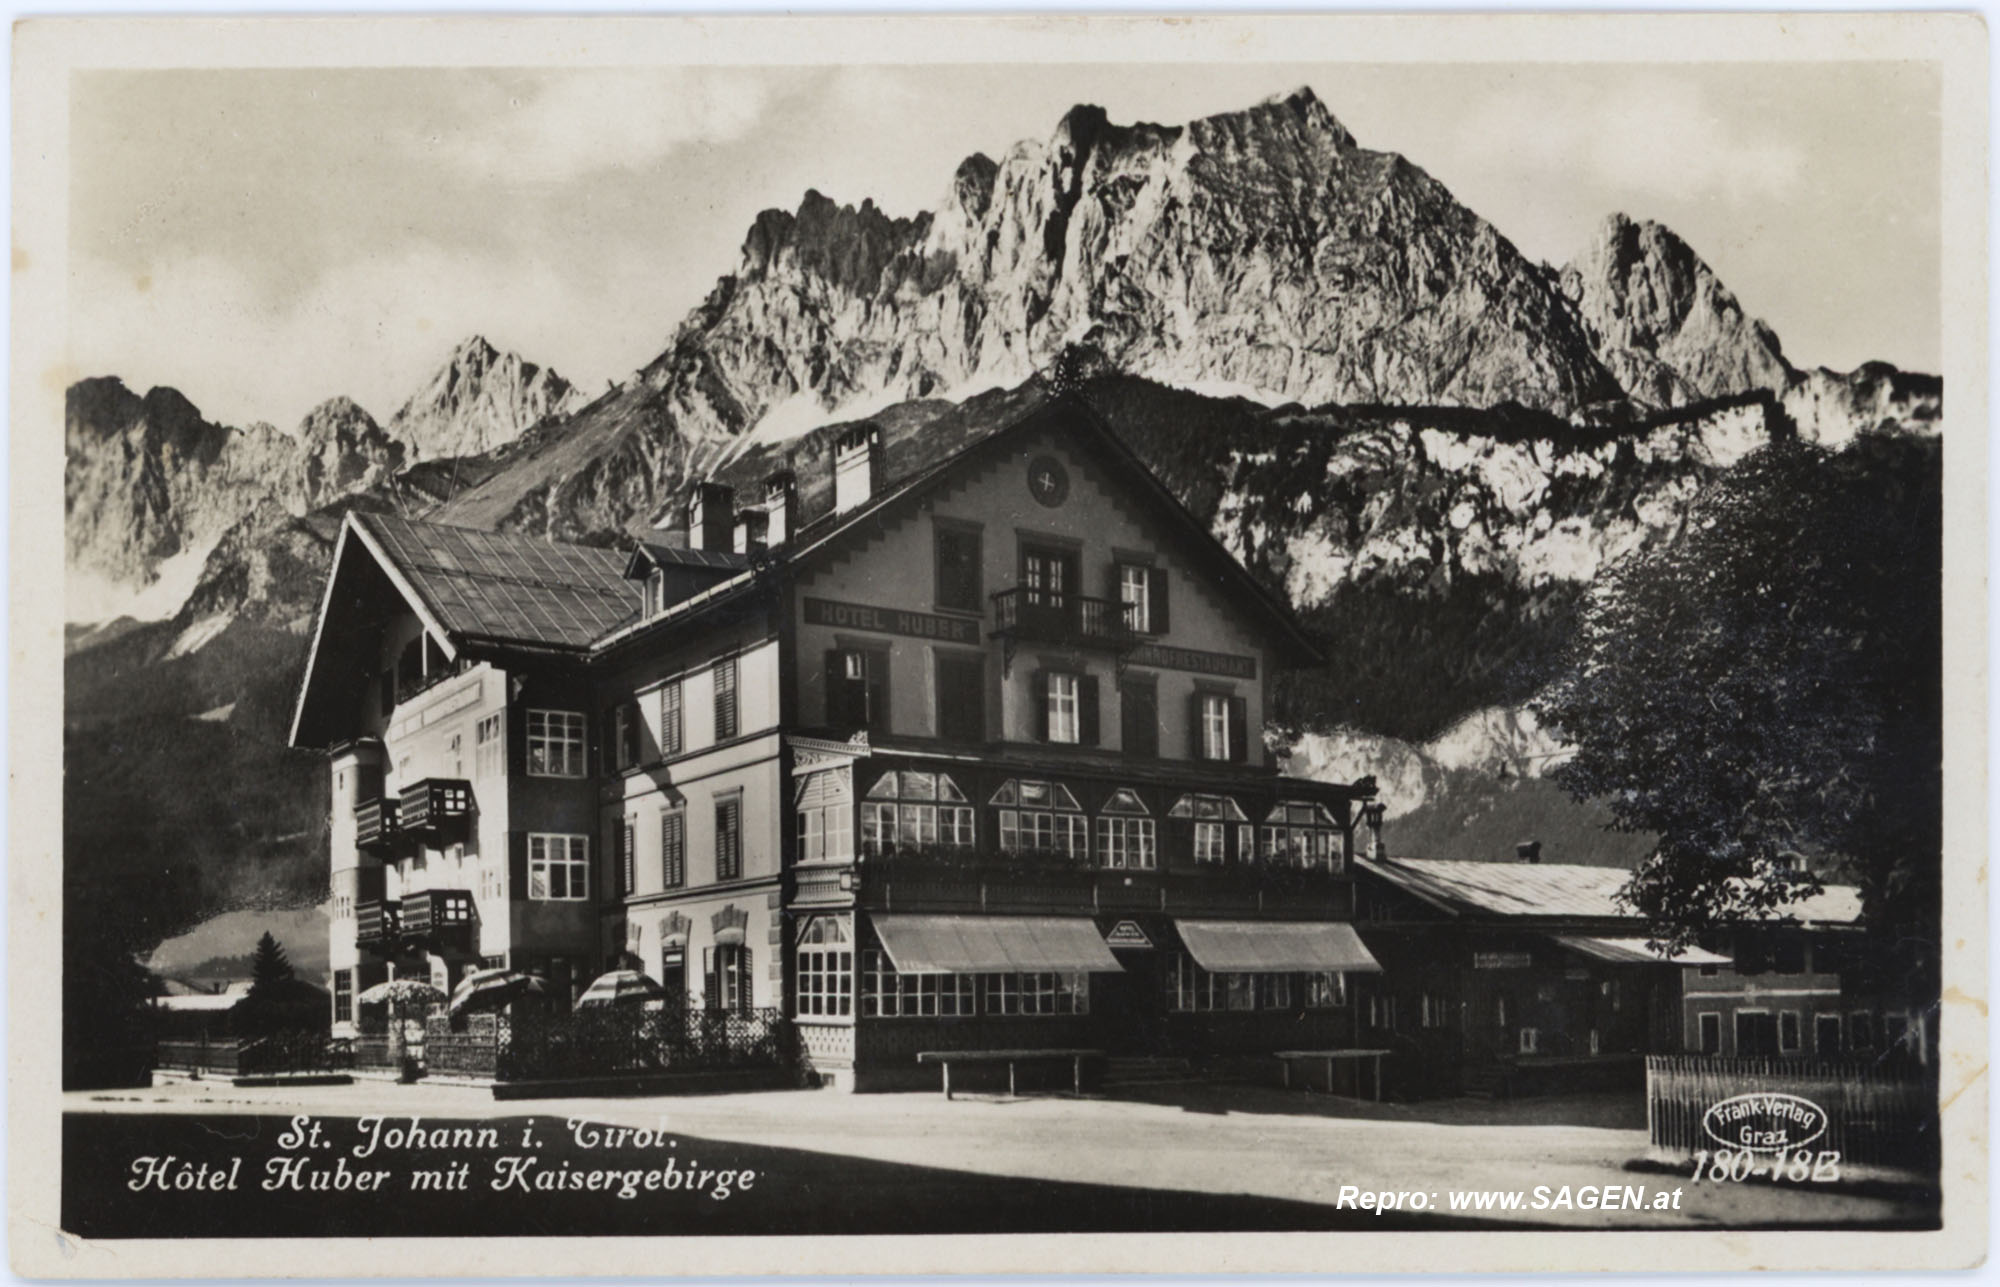 St. Johann in Tirol, Hotel Huber mit Kaisergebirge